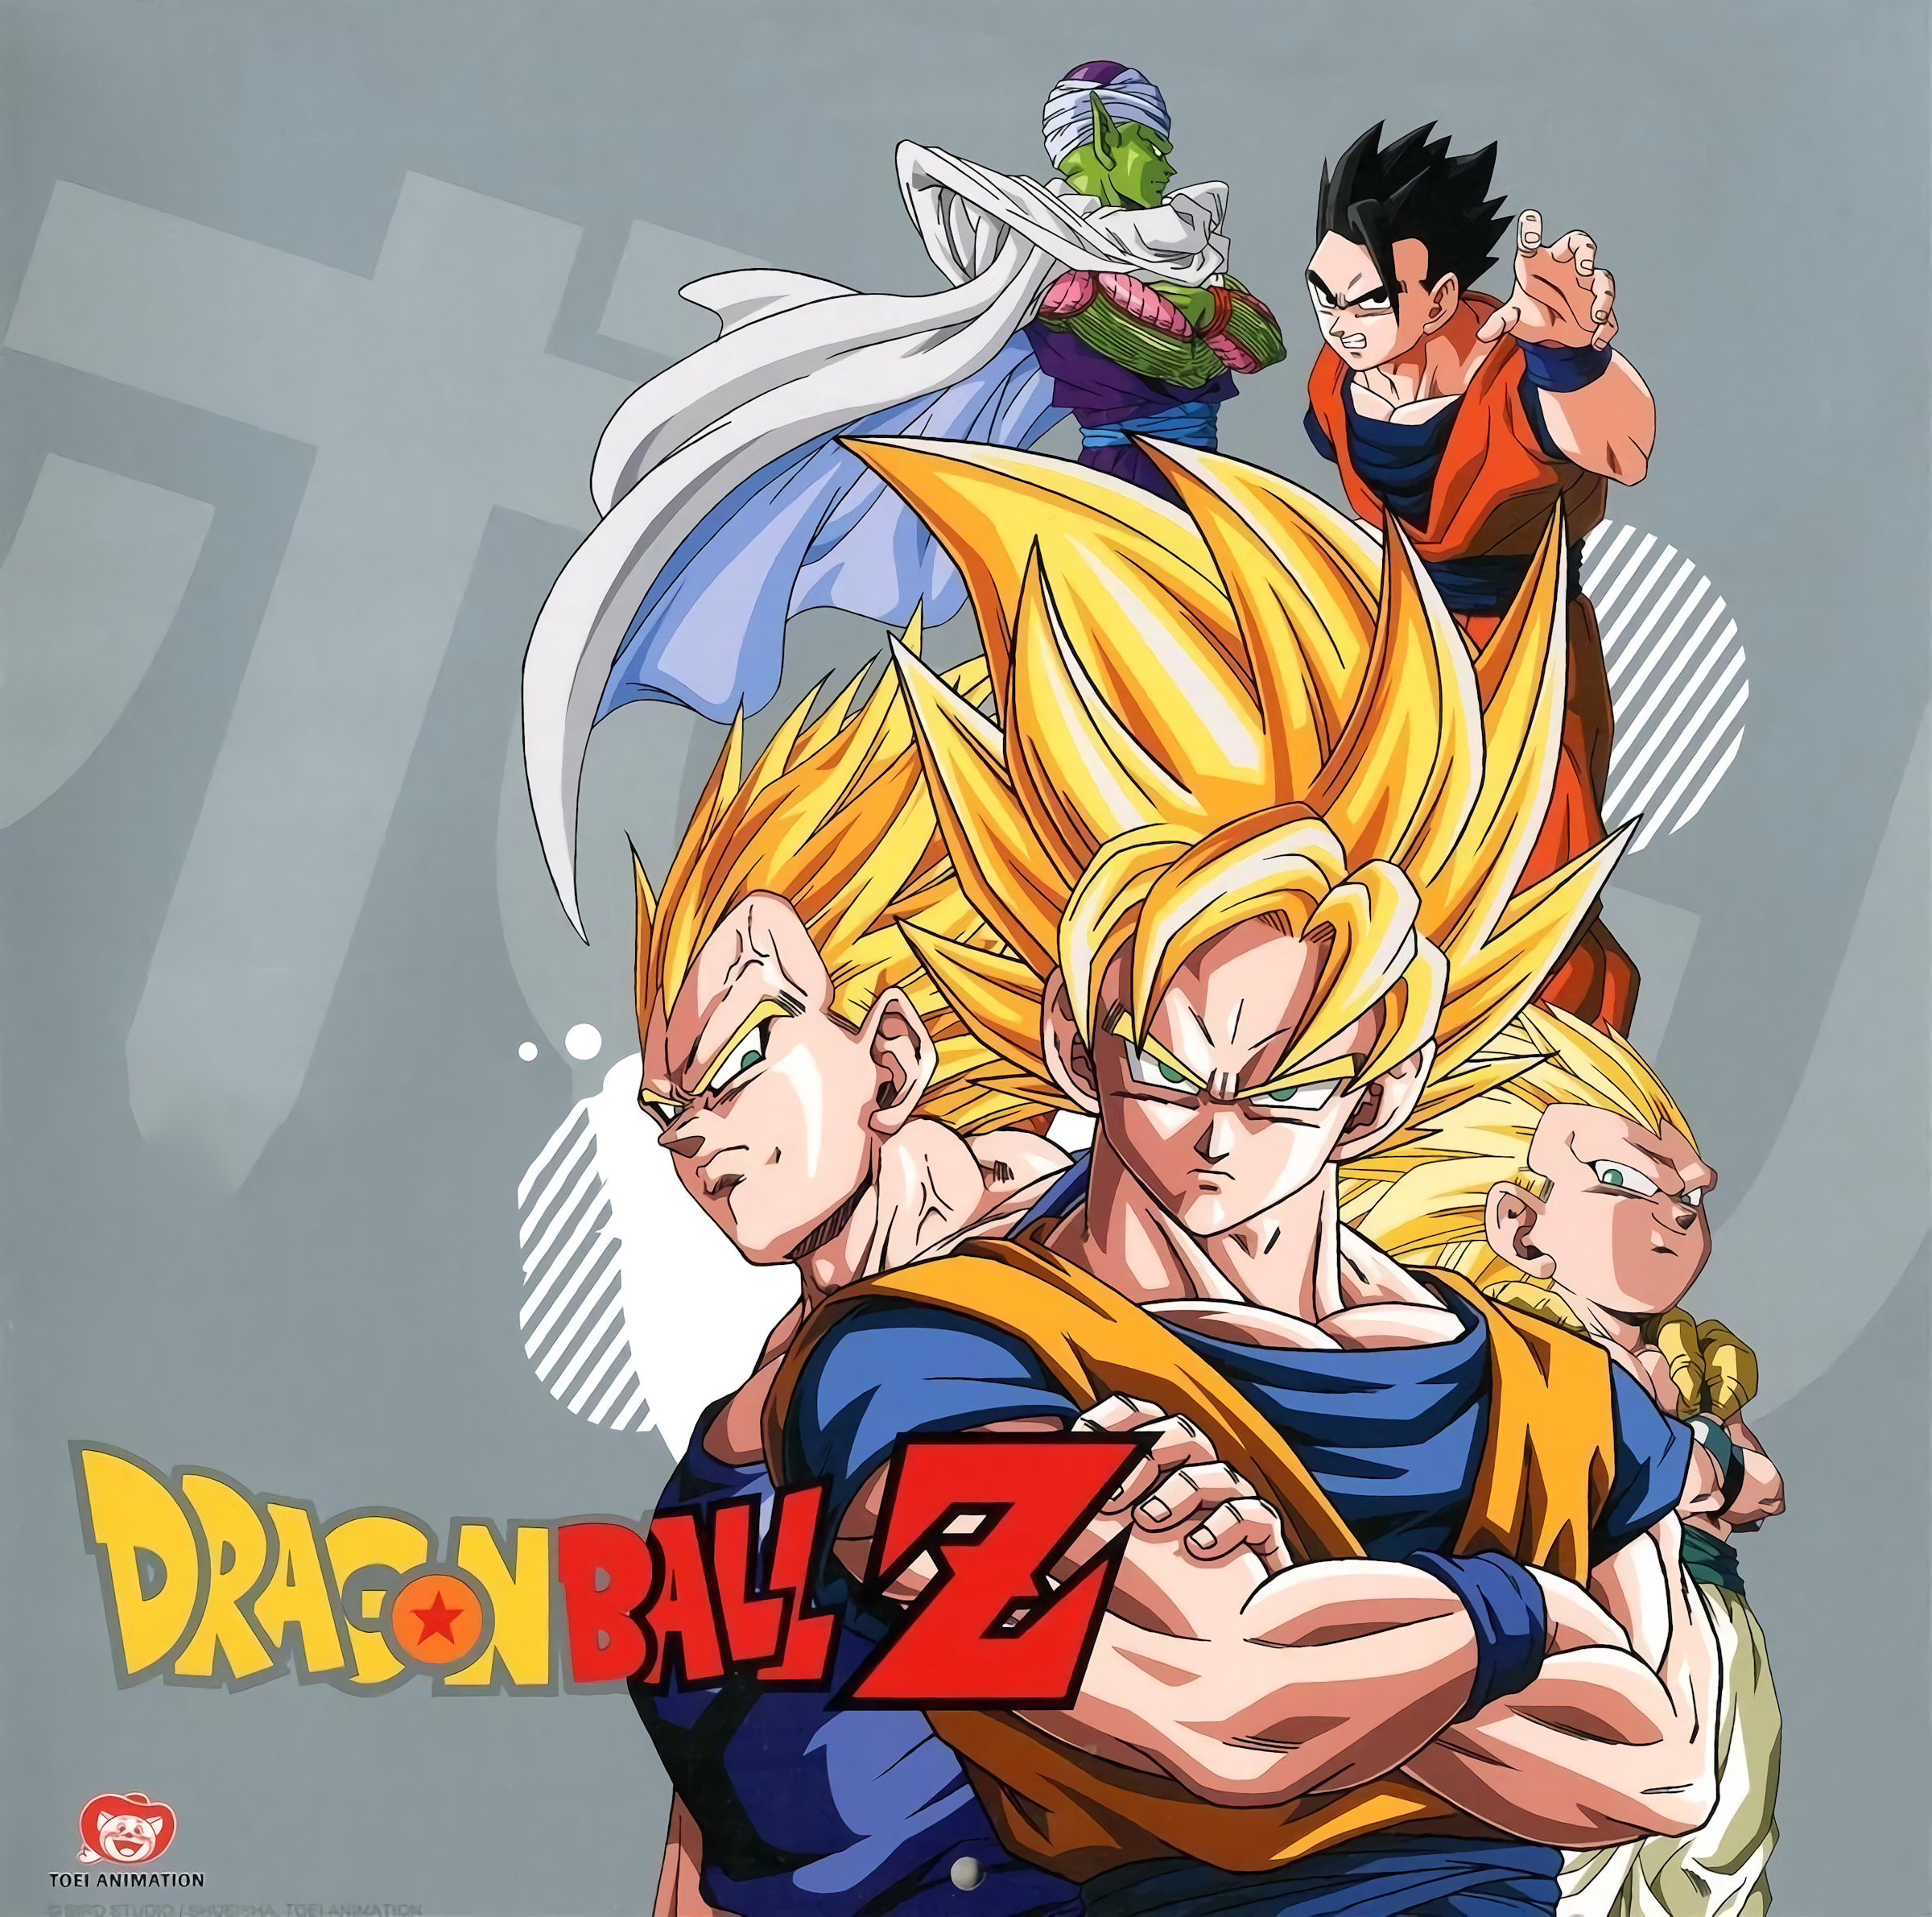 Dragon Ball Z Saga Majin Boo by DanteAce69 on DeviantArt